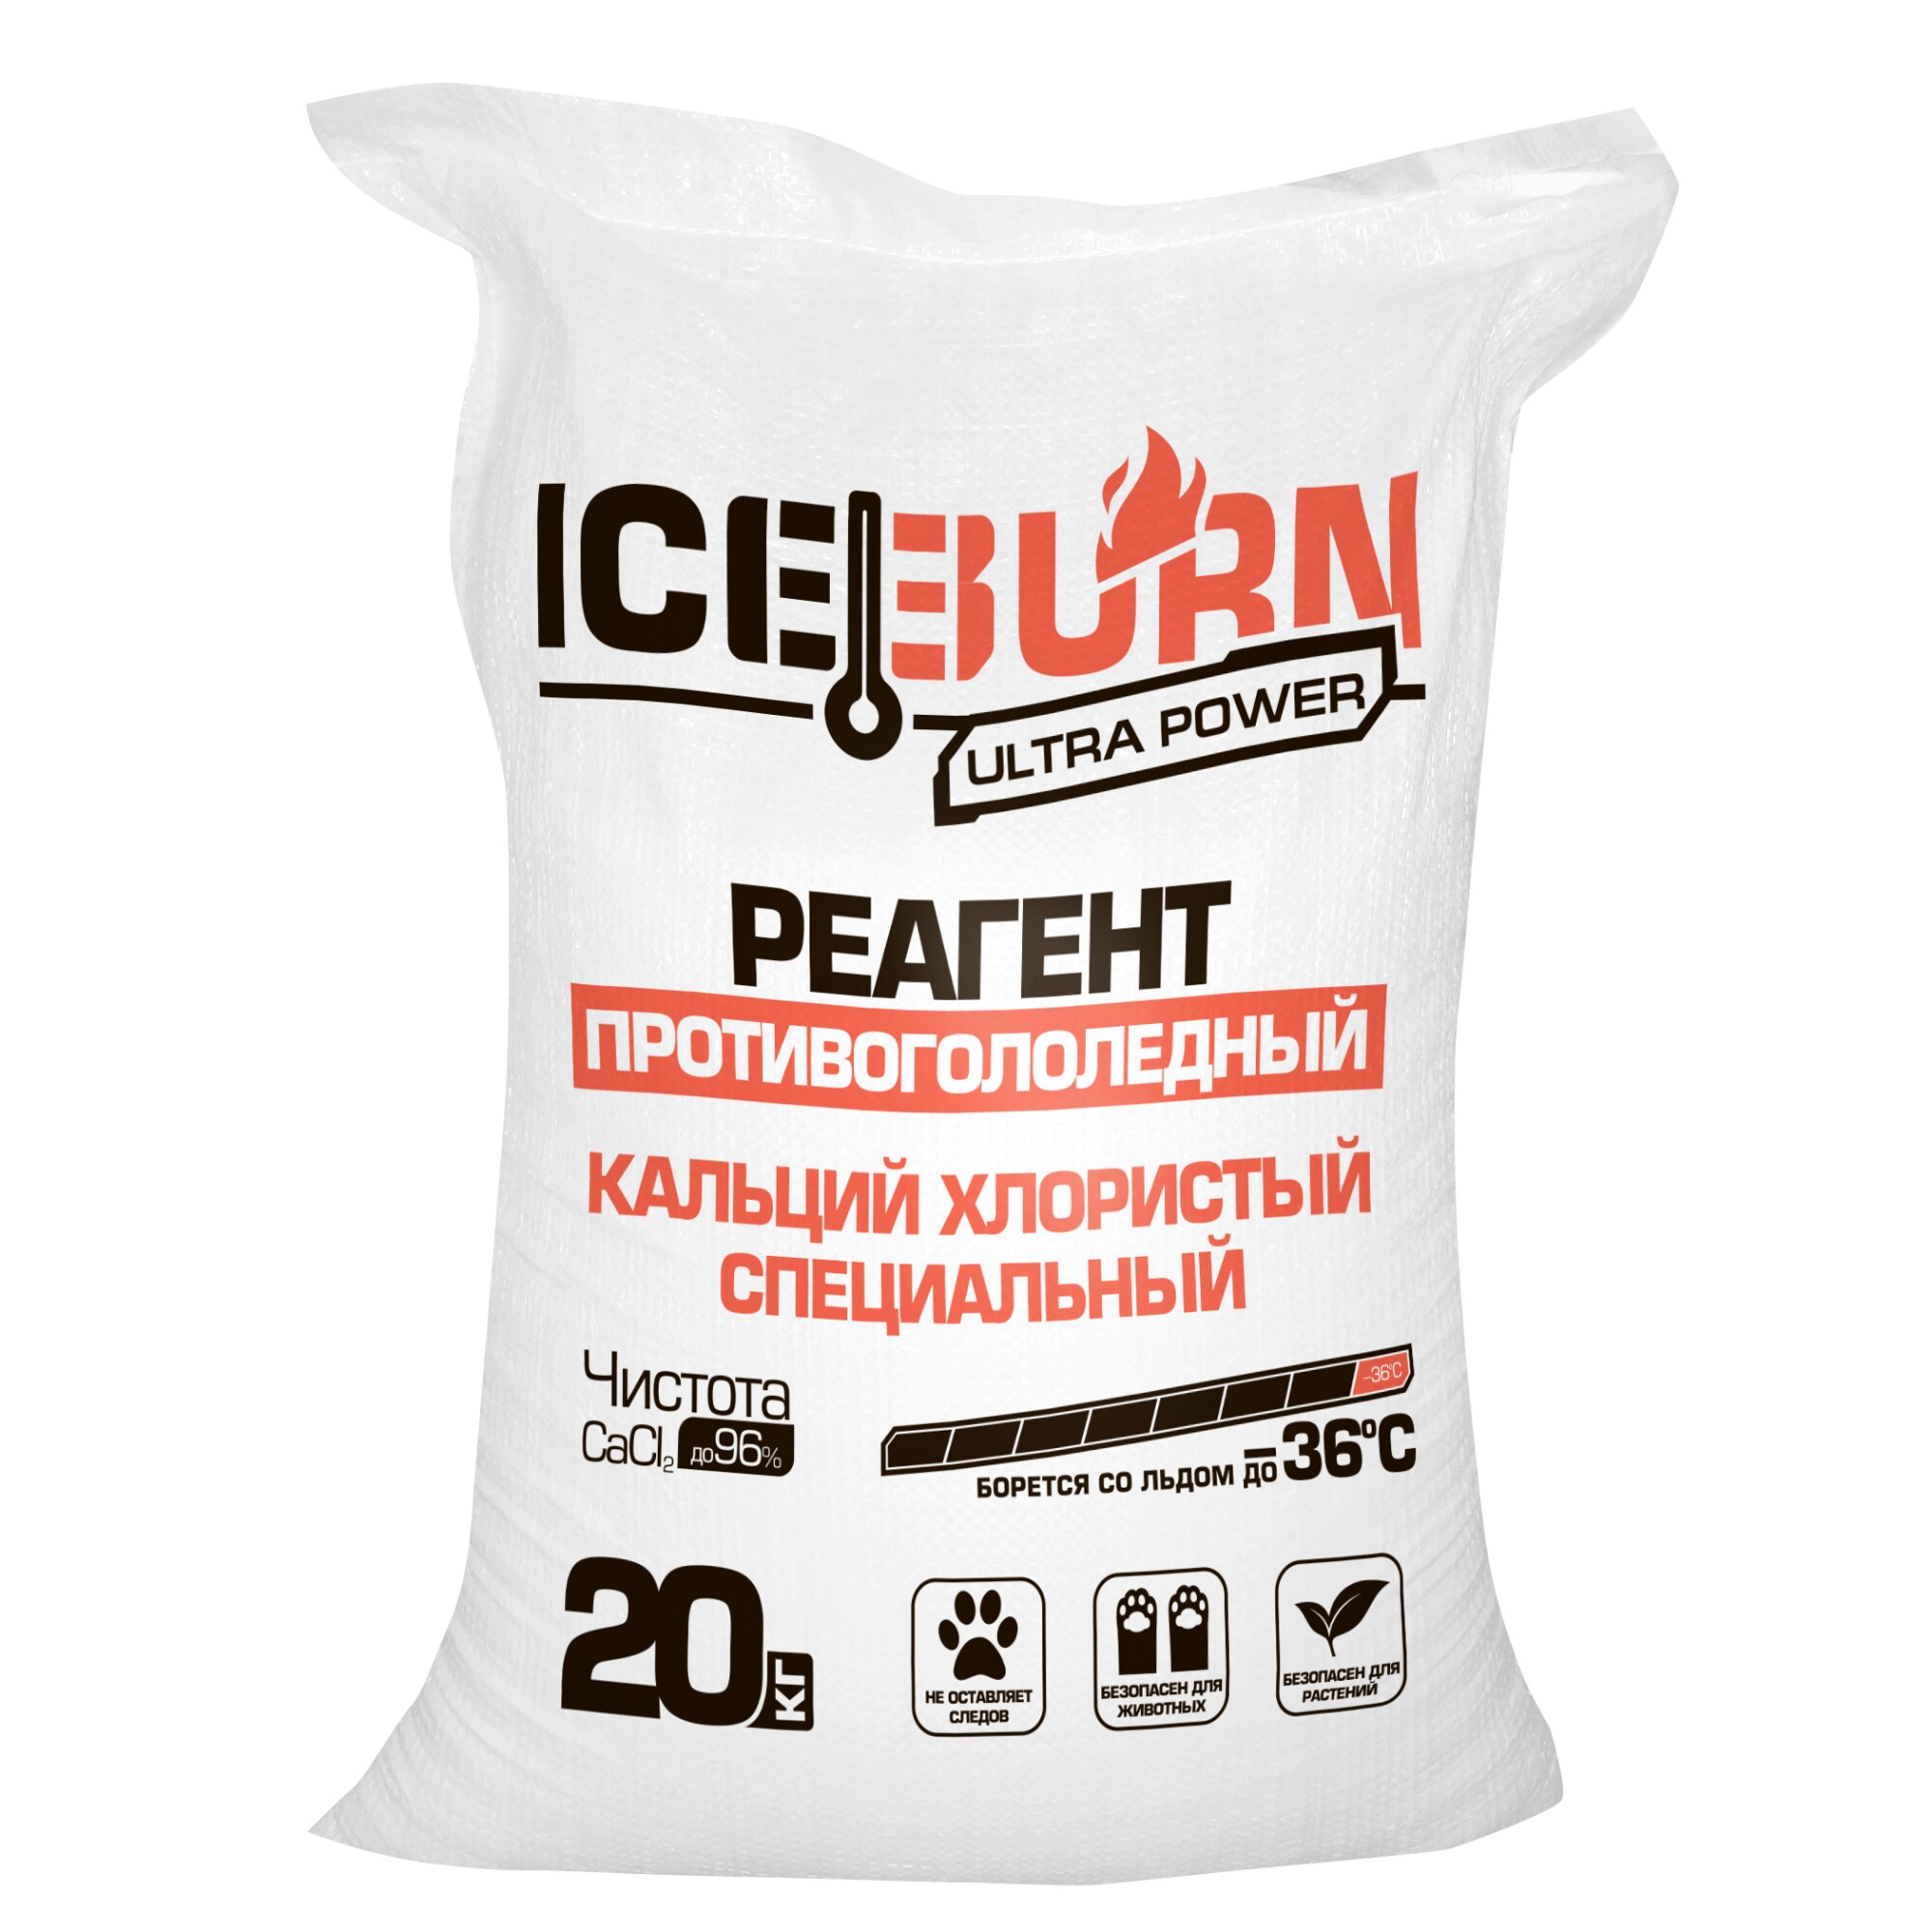 Реагент противогололедный ICEBURN ULTRA POWER (до -36 С), кальций хлористый специальный, чистота до 96%, мешок 20 кг